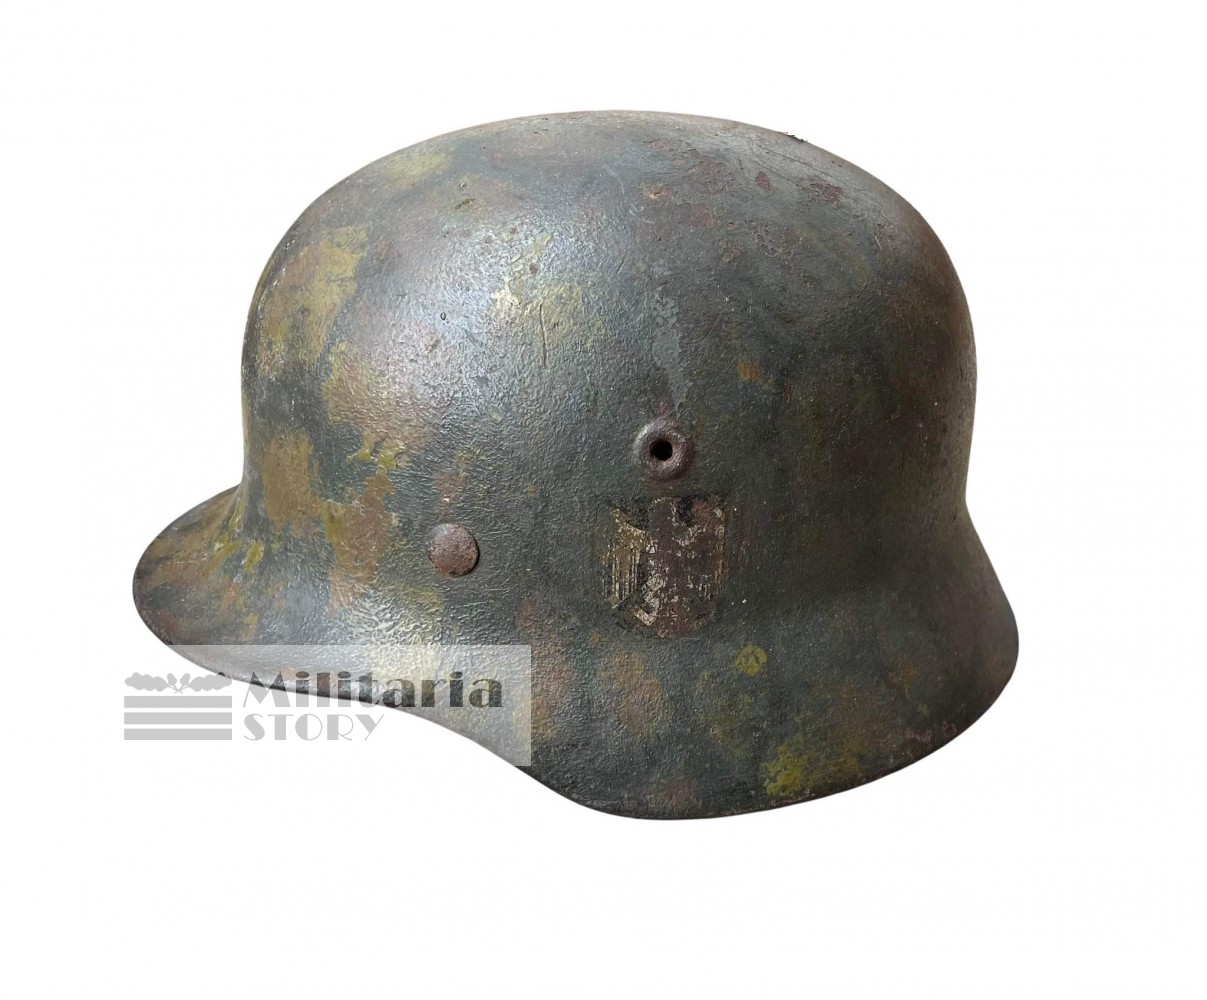 M40 Heer Tortoise camo helmet - M40 Heer Tortoise camo helmet: pre-war German Headgear